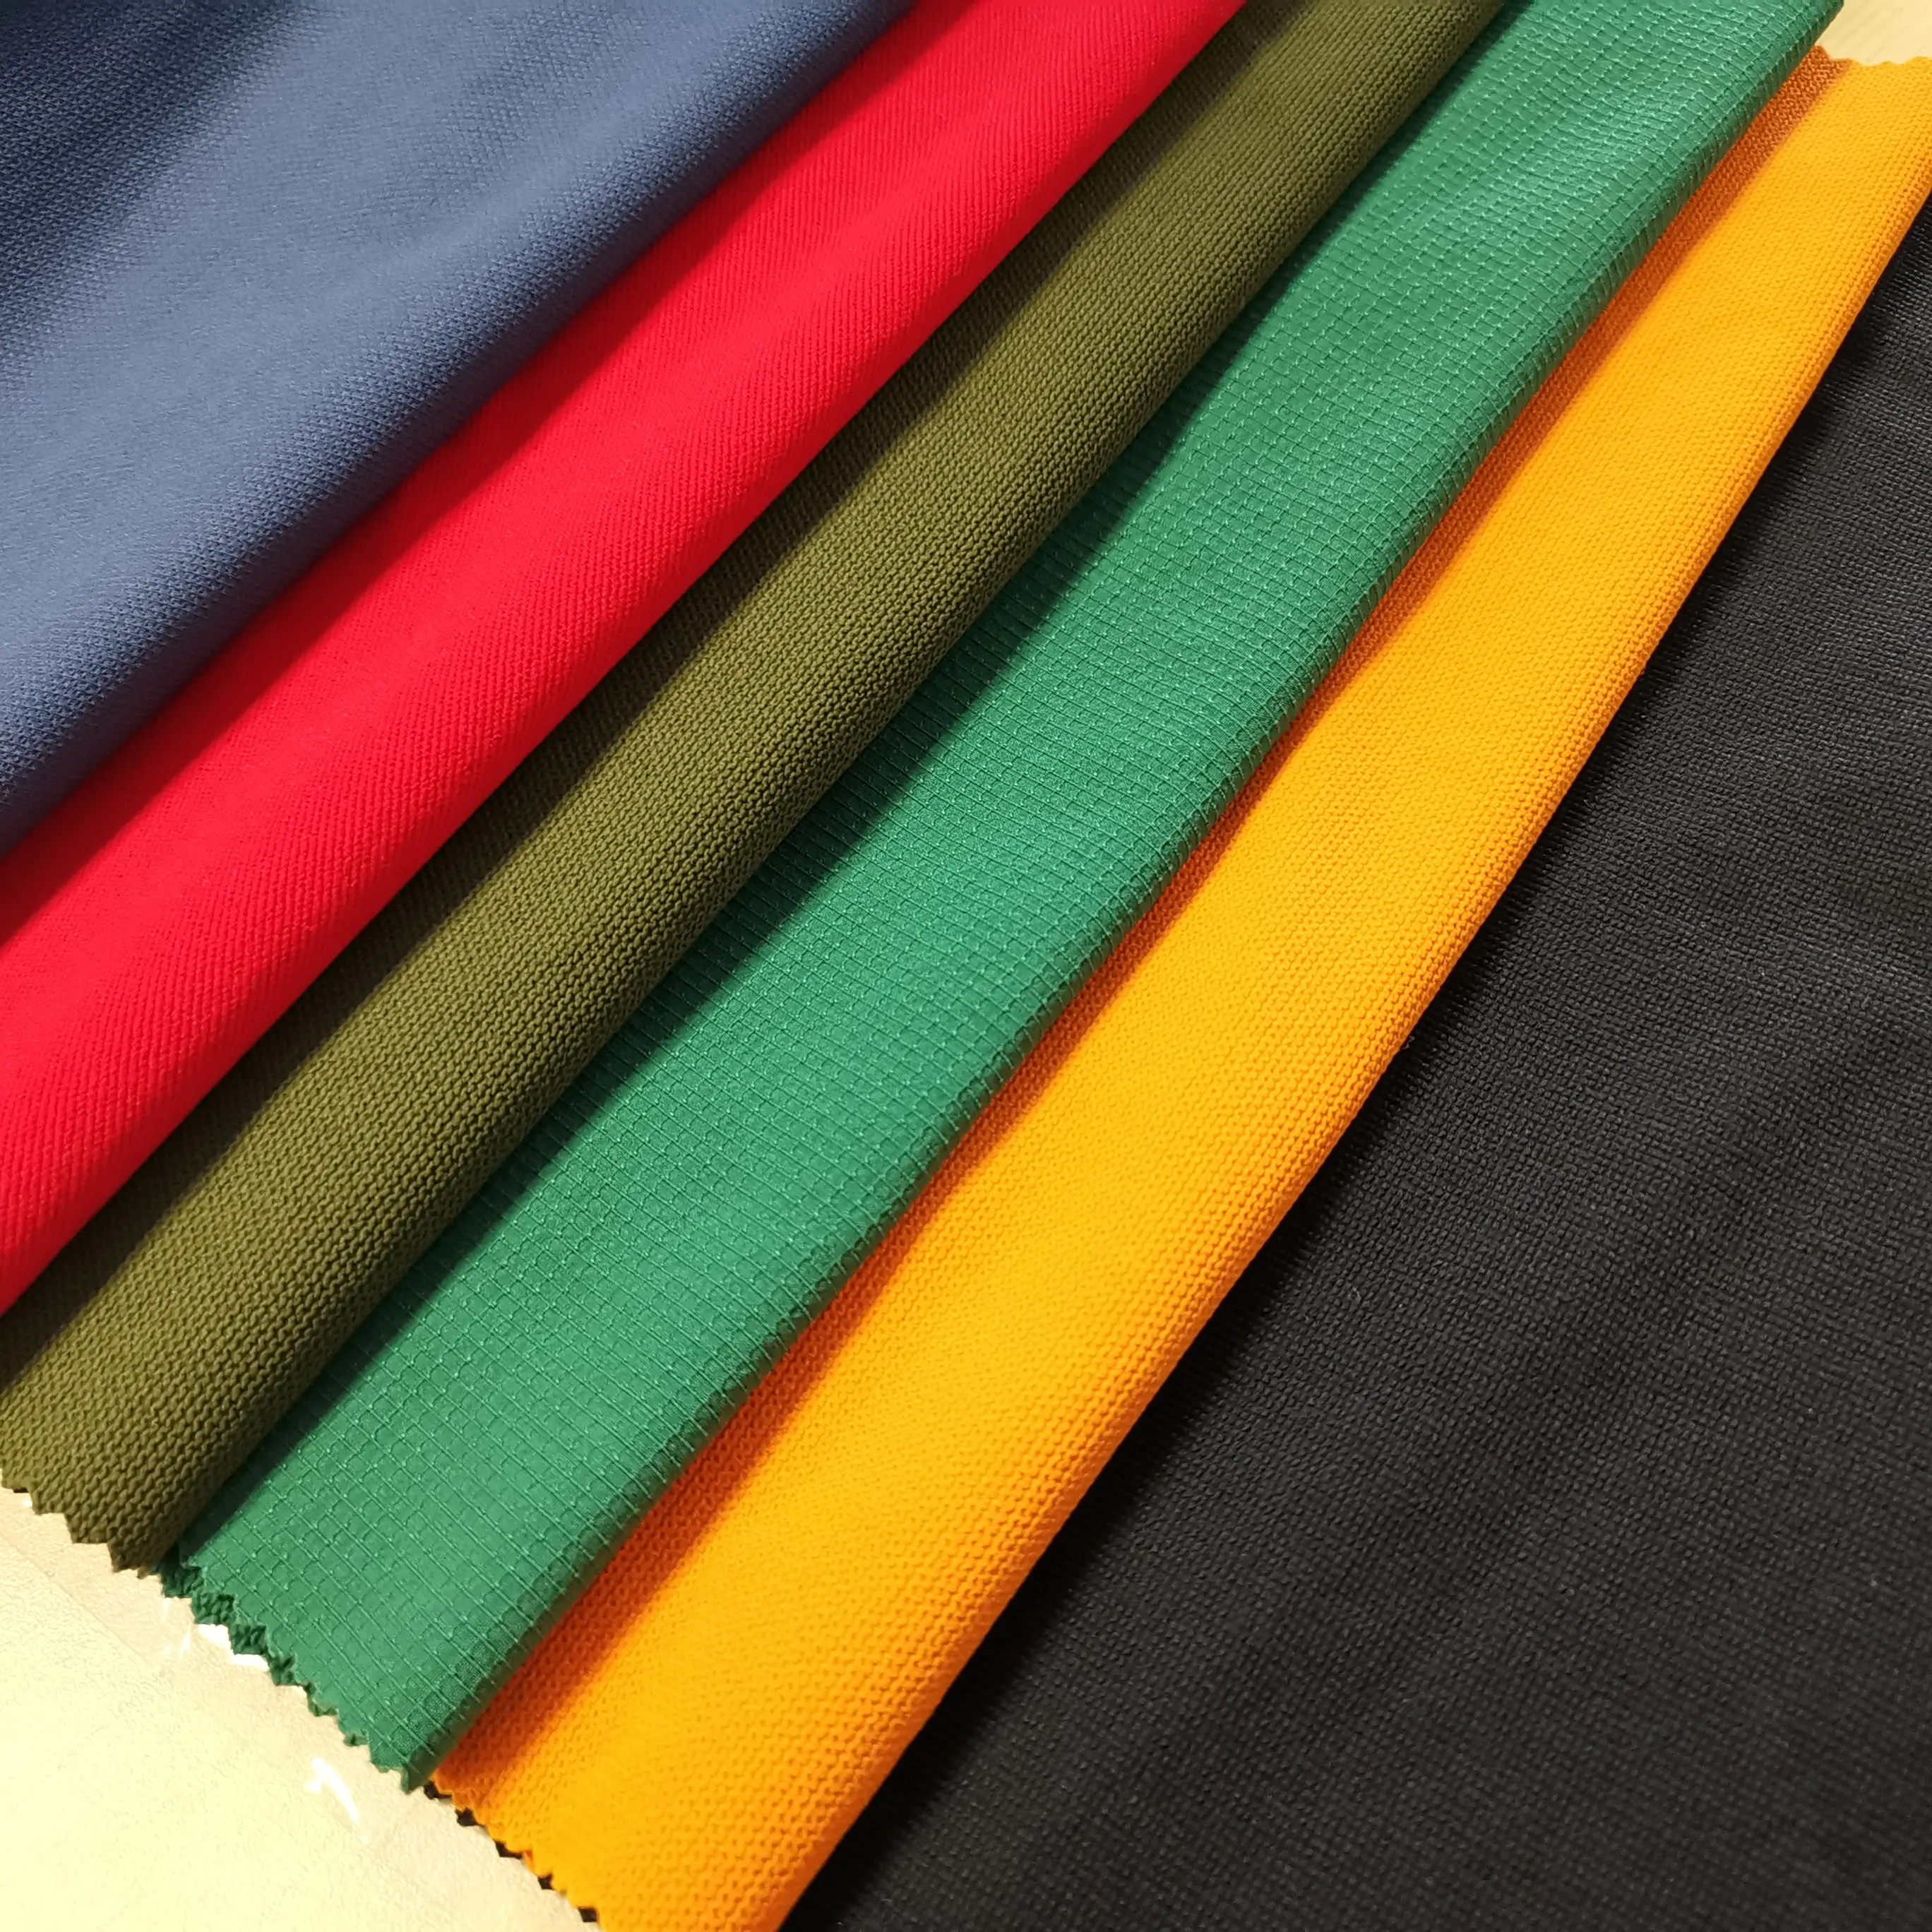 Fonte de fábrica de nylon spandex 4 way stretch lisa tecido calças casaco tecido